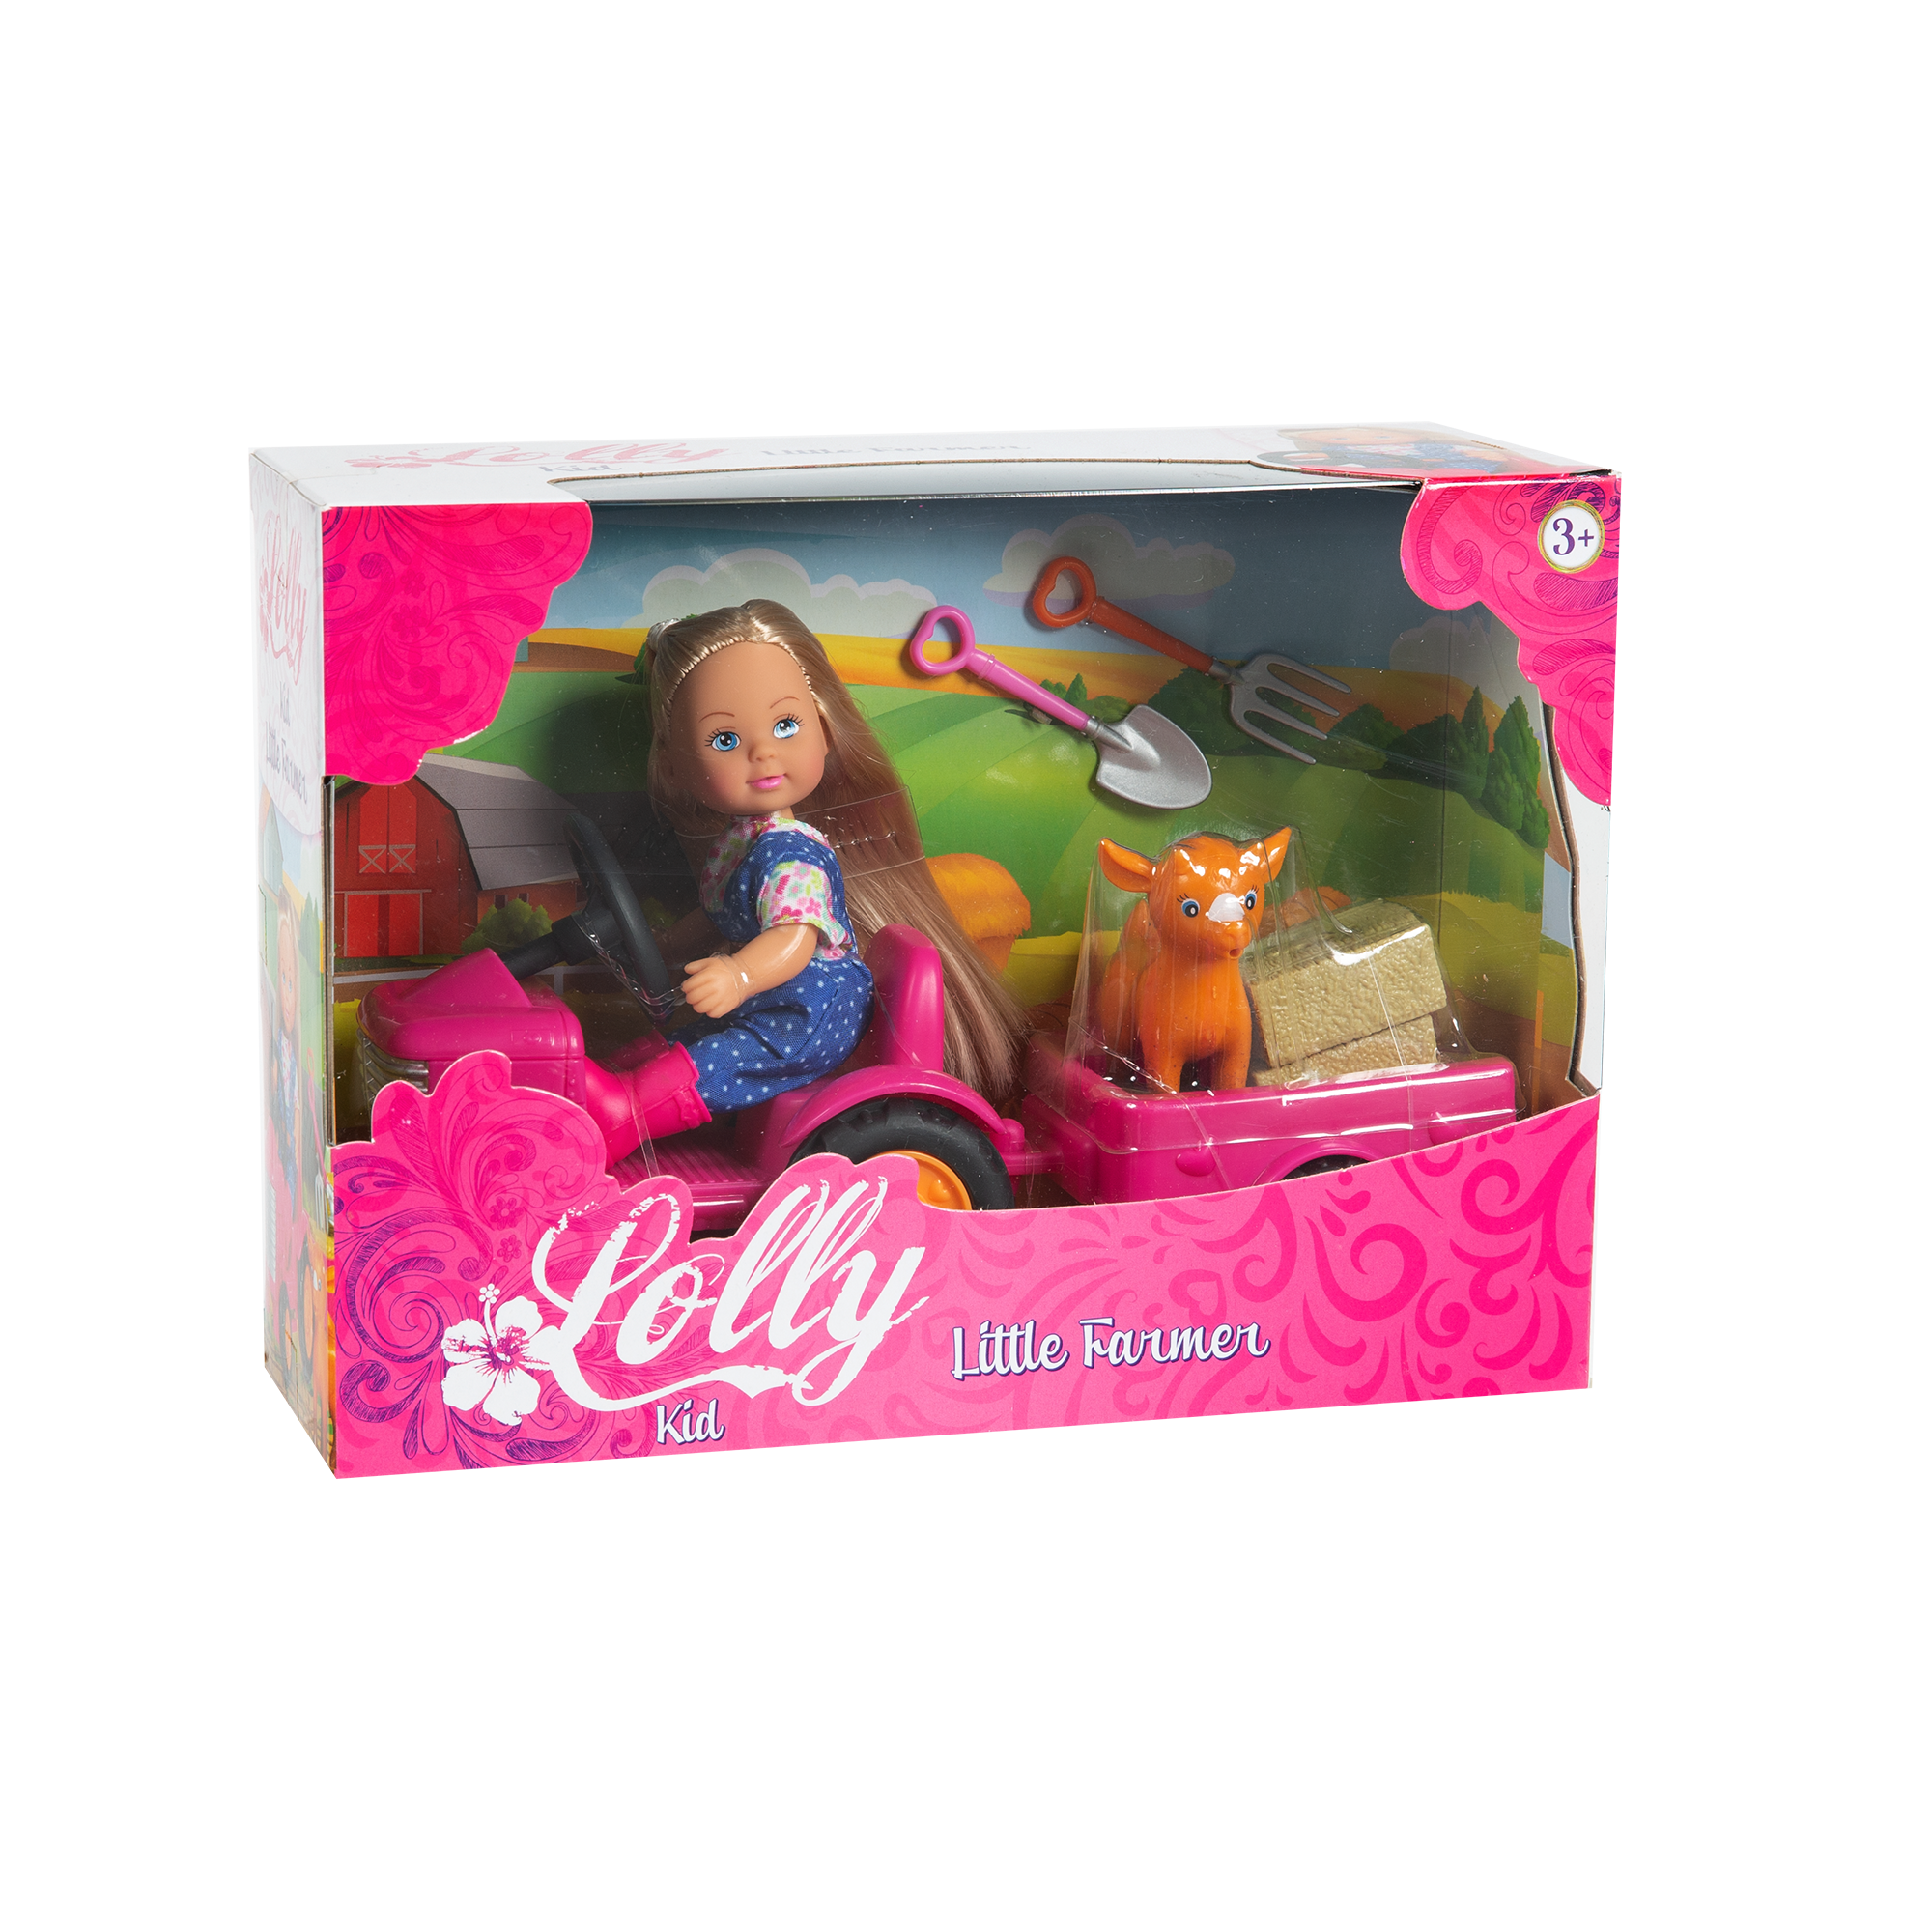 Lolly kid con trattore - LOLLY